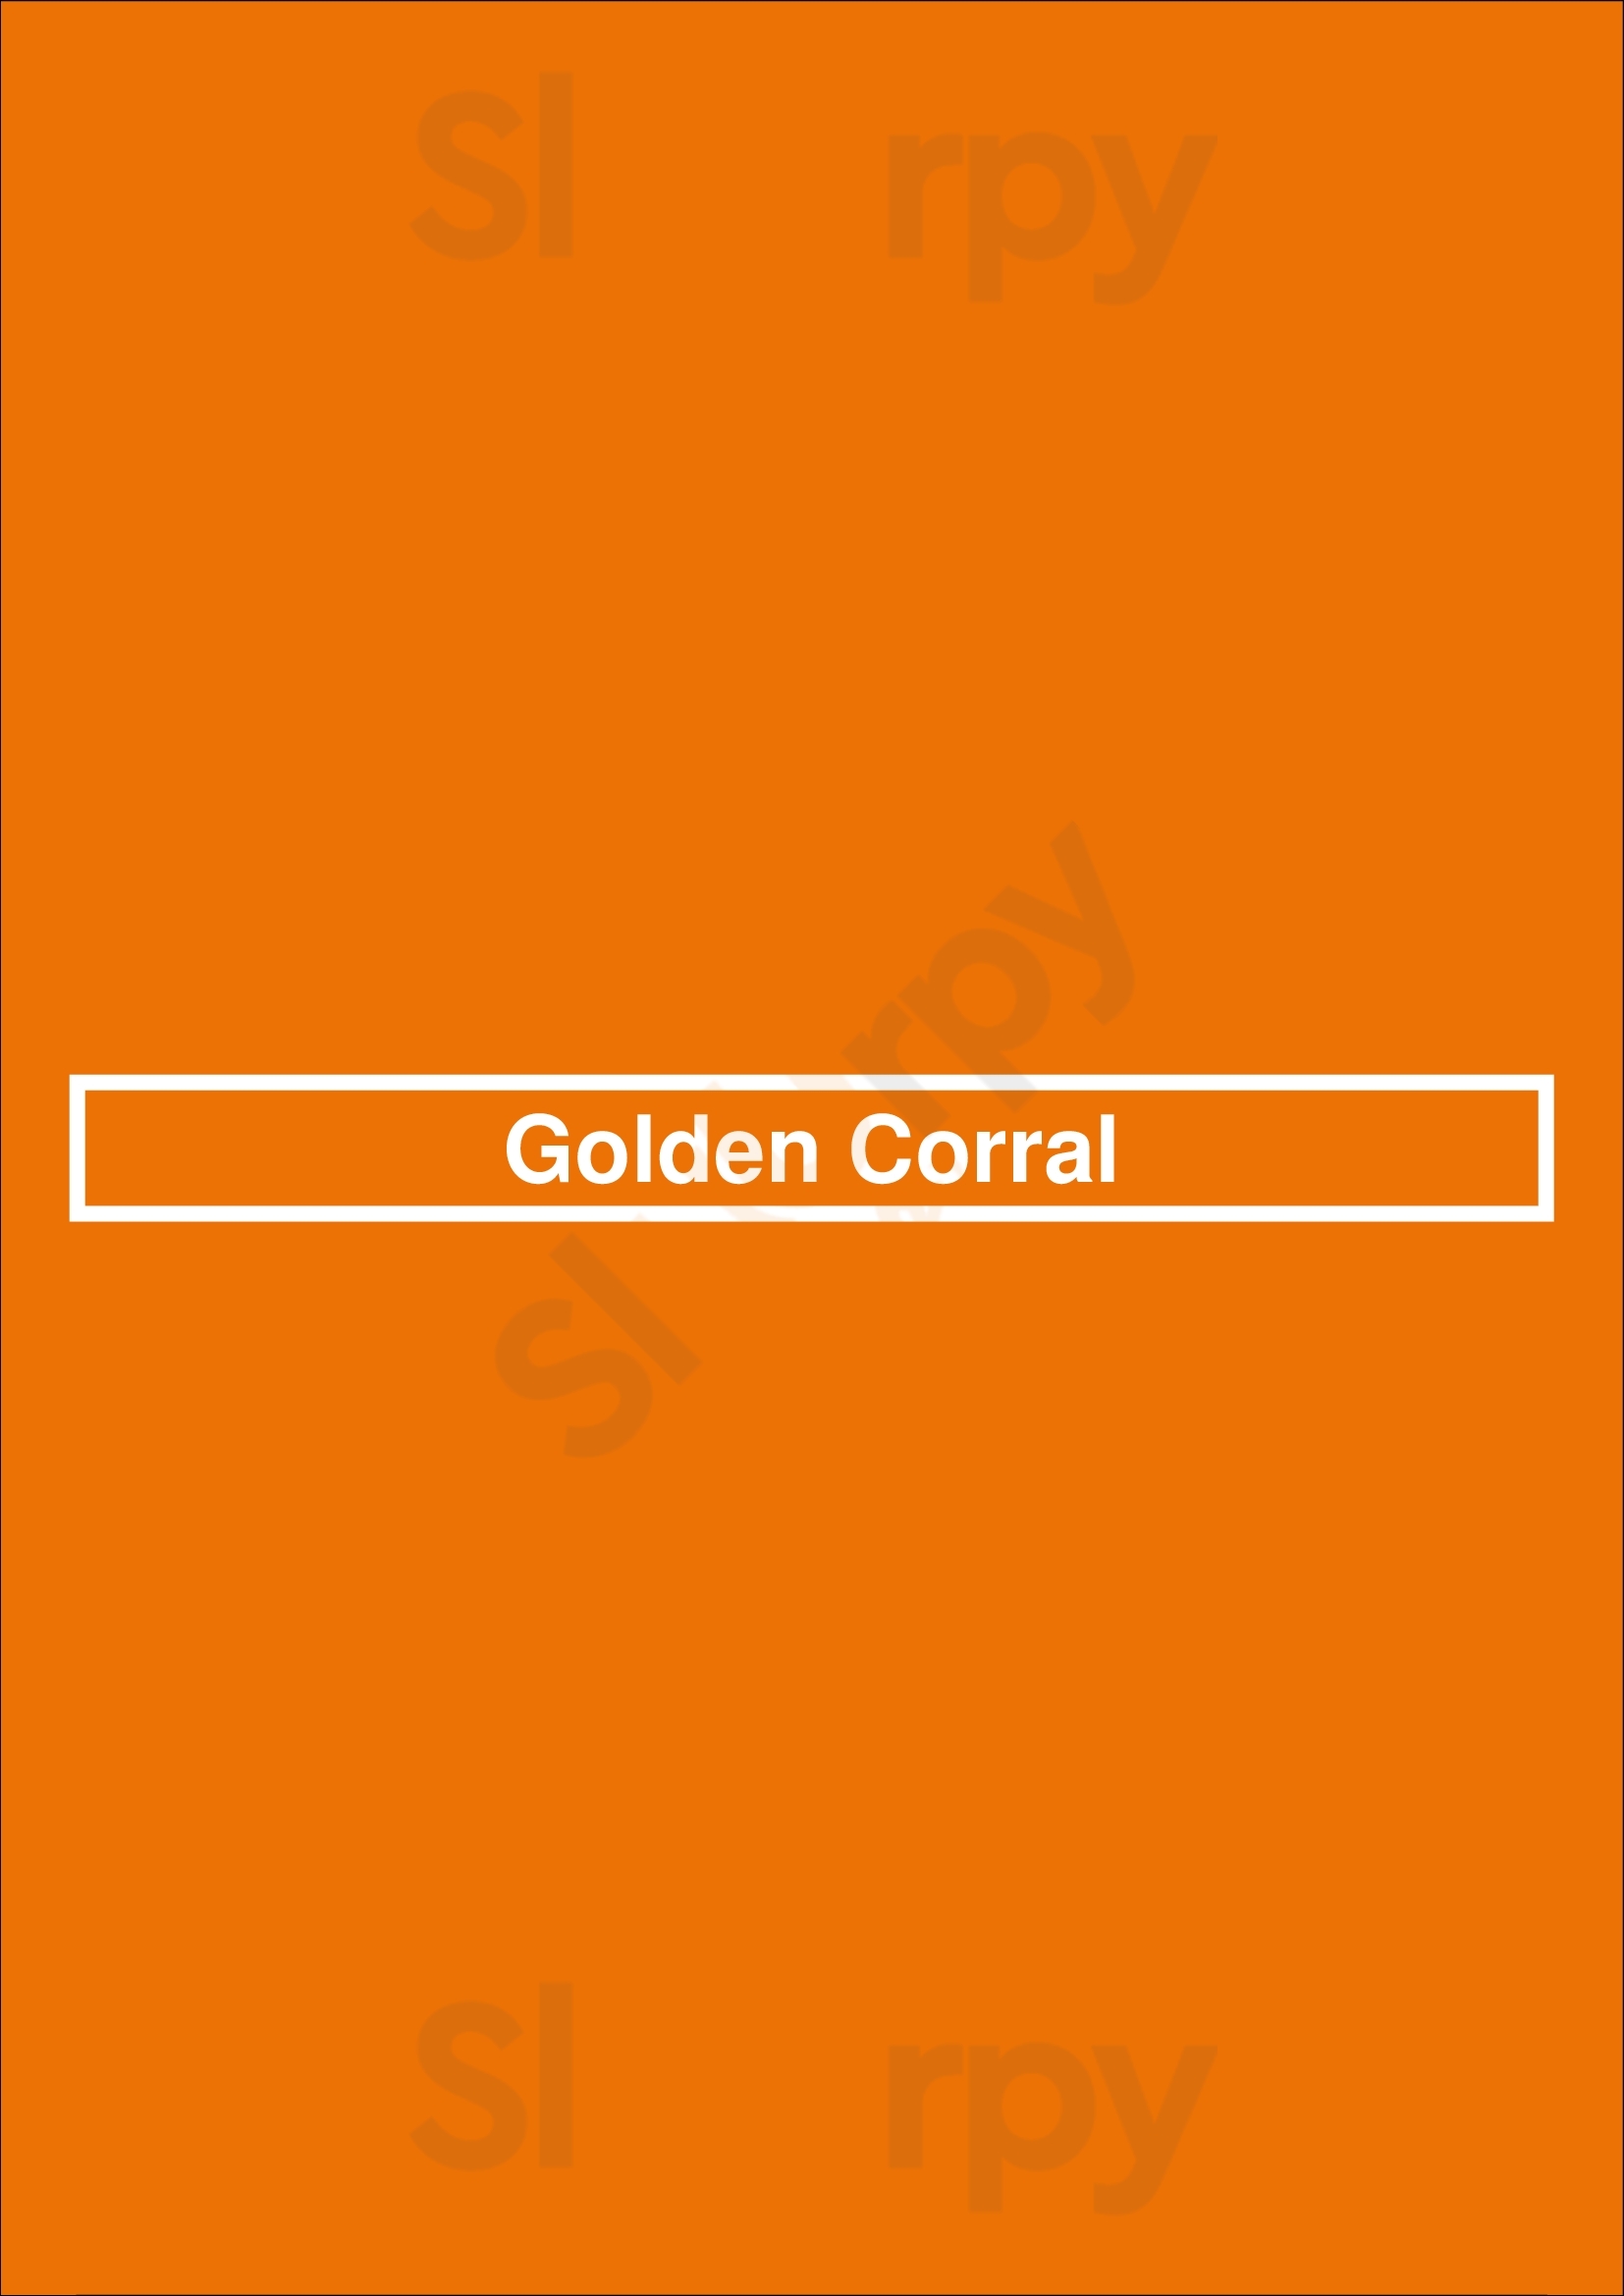 Golden Corral San Antonio Menu - 1